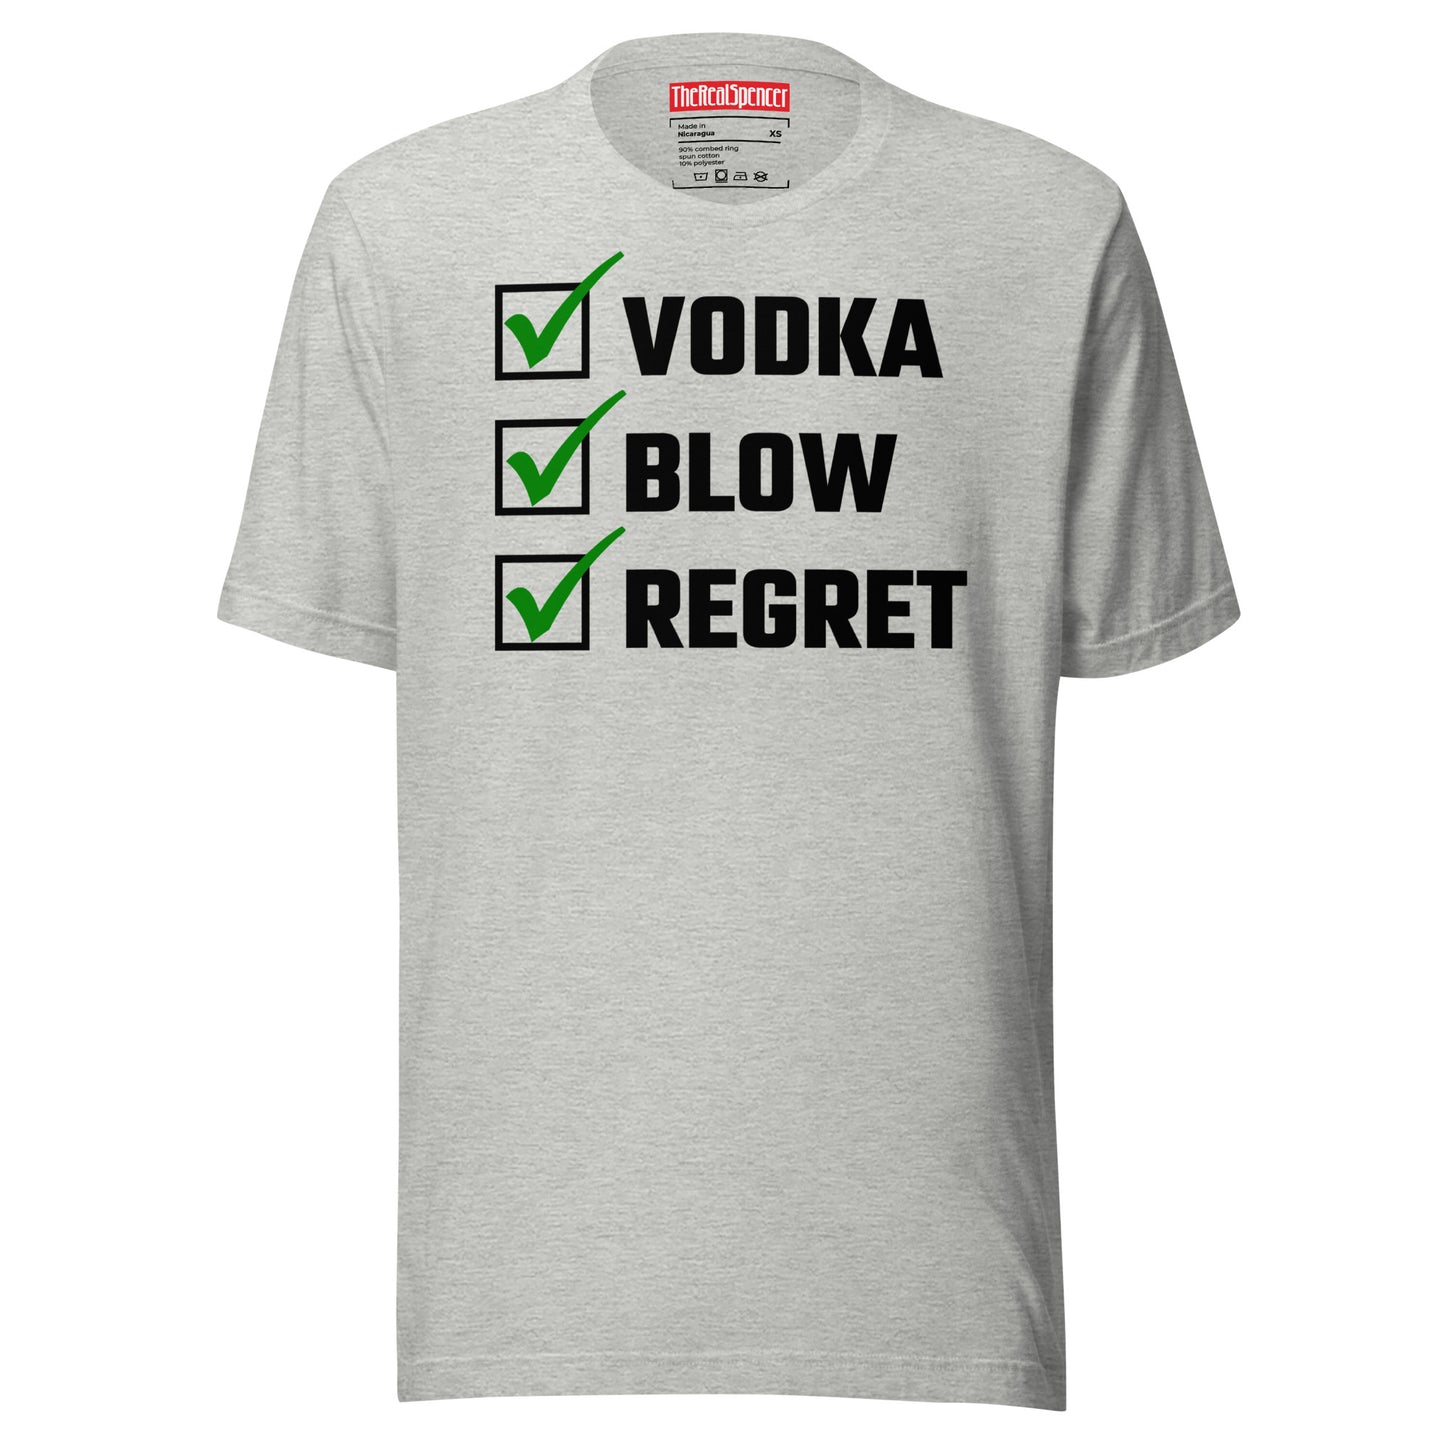 Vodka, Blow, Regret T-Shirt